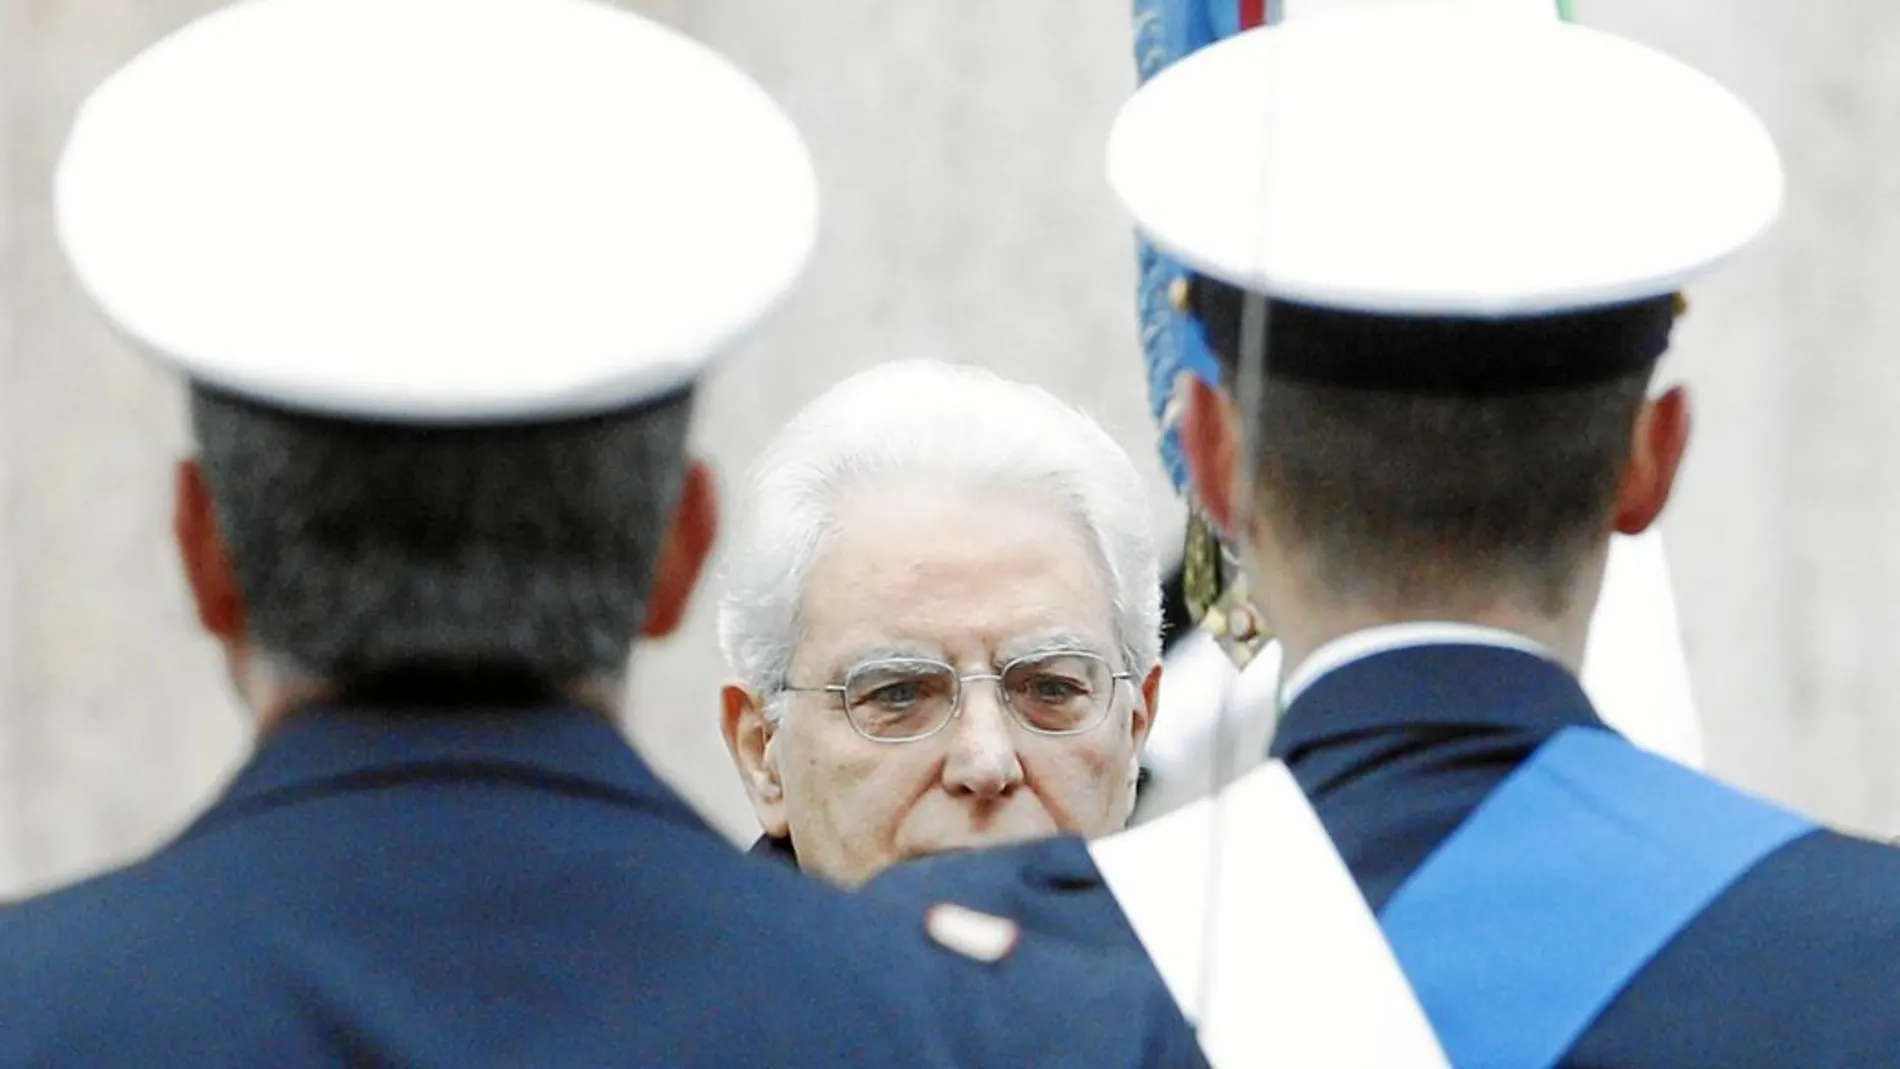 El presidente de la República, Sergio Mattarella, es el árbitro de las negociaciones